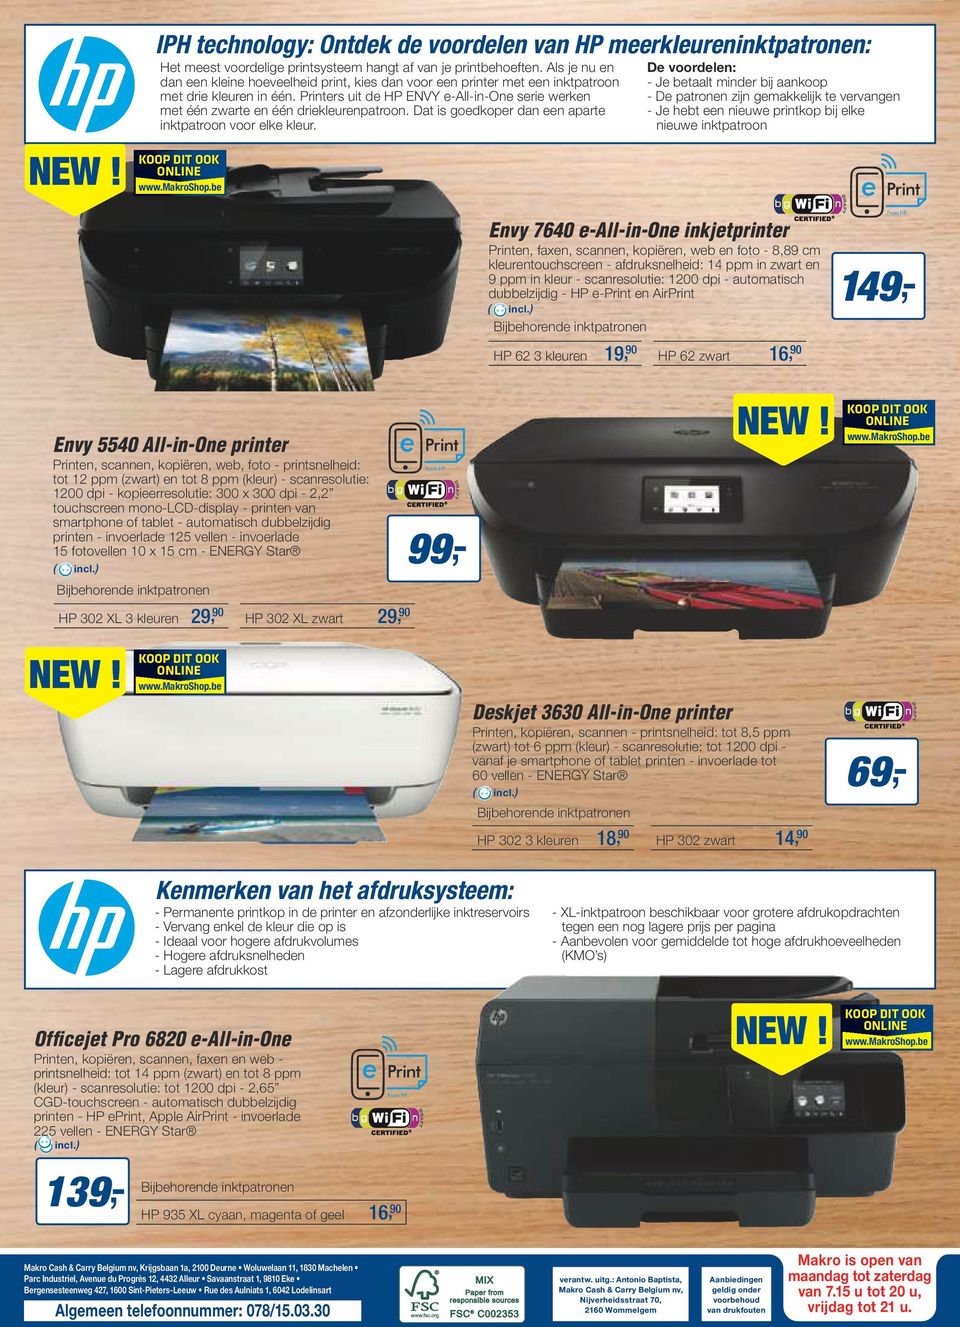 Printers uit de HP ENVY e-all-in-one serie werken met één zwarte en één driekleurenpatroon. Dat is goedkoper dan een aparte inktpatroon voor elke kleur.